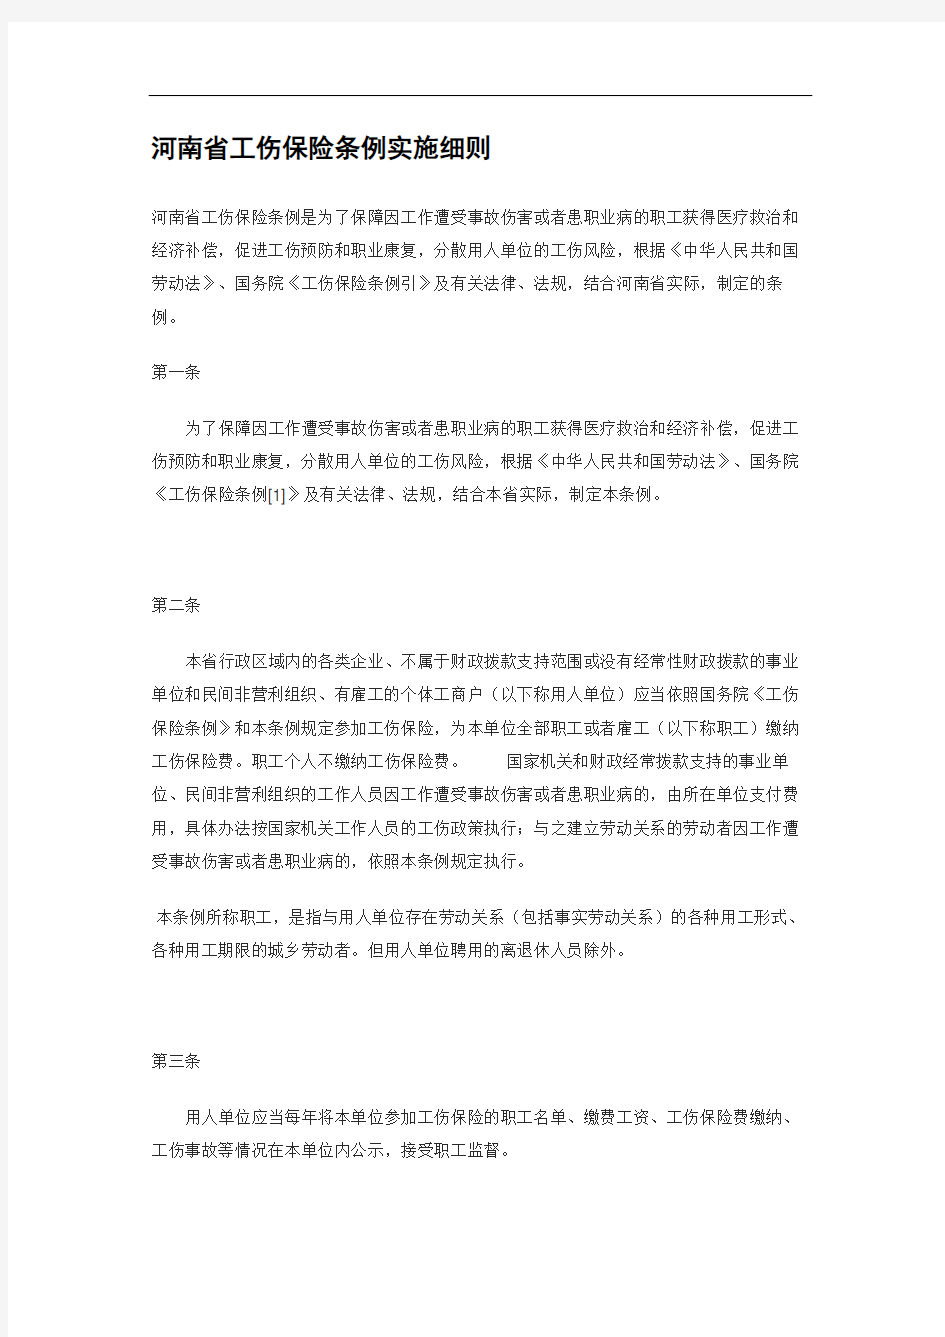 河南省工伤保险条例实施细则修订版